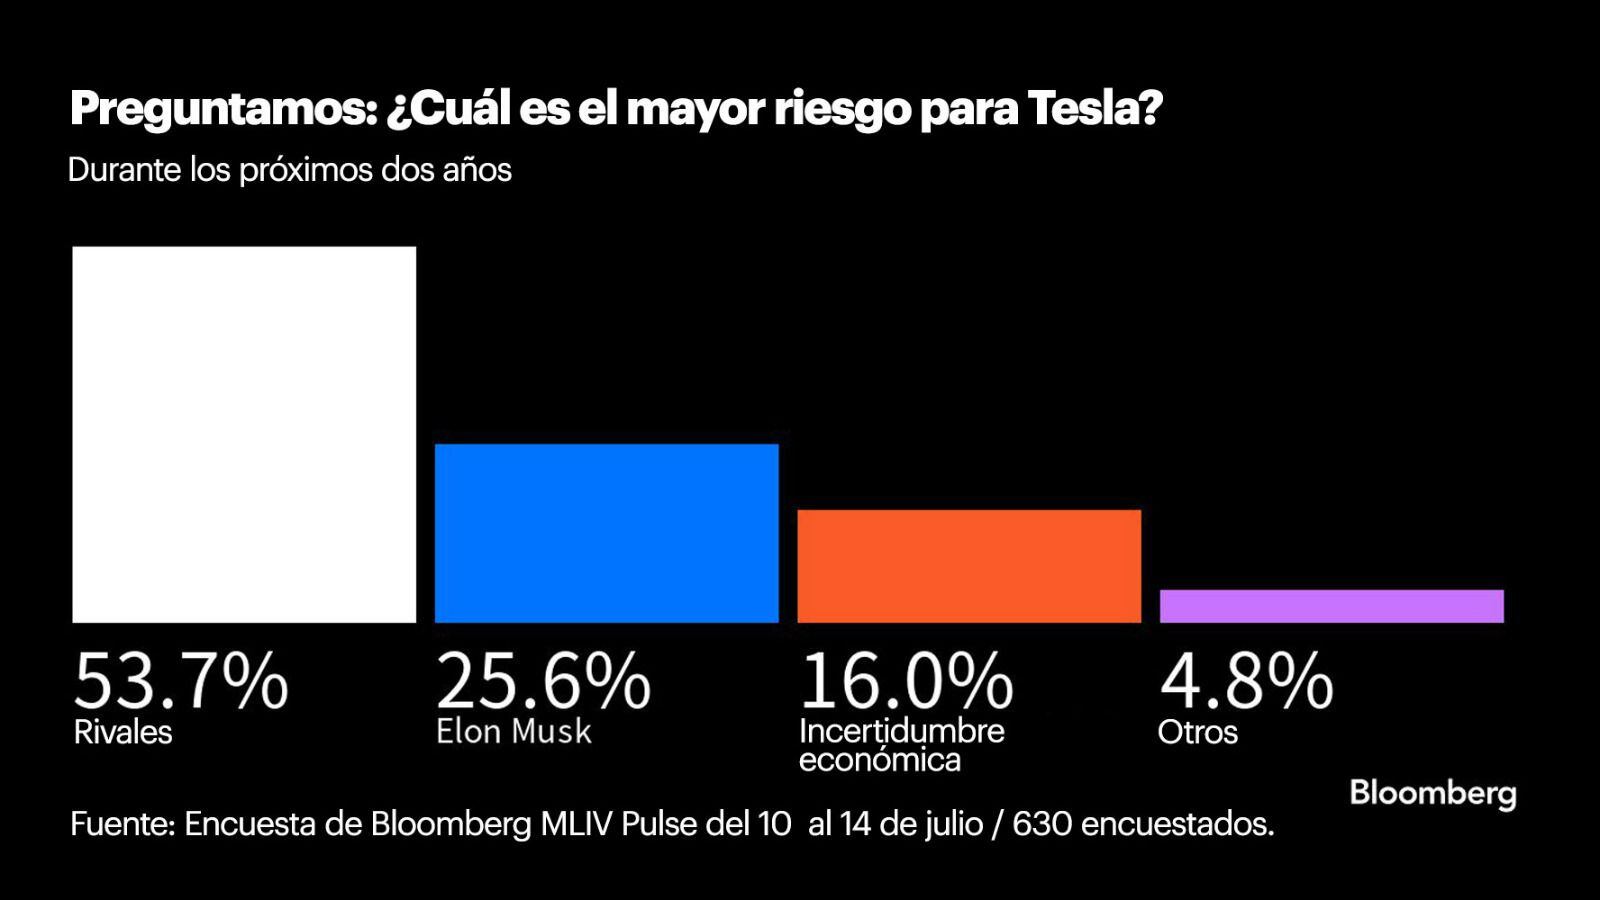 La encuesta de Bloomberg sobre los riesgos de Tesla considera tres factores como los más probables.